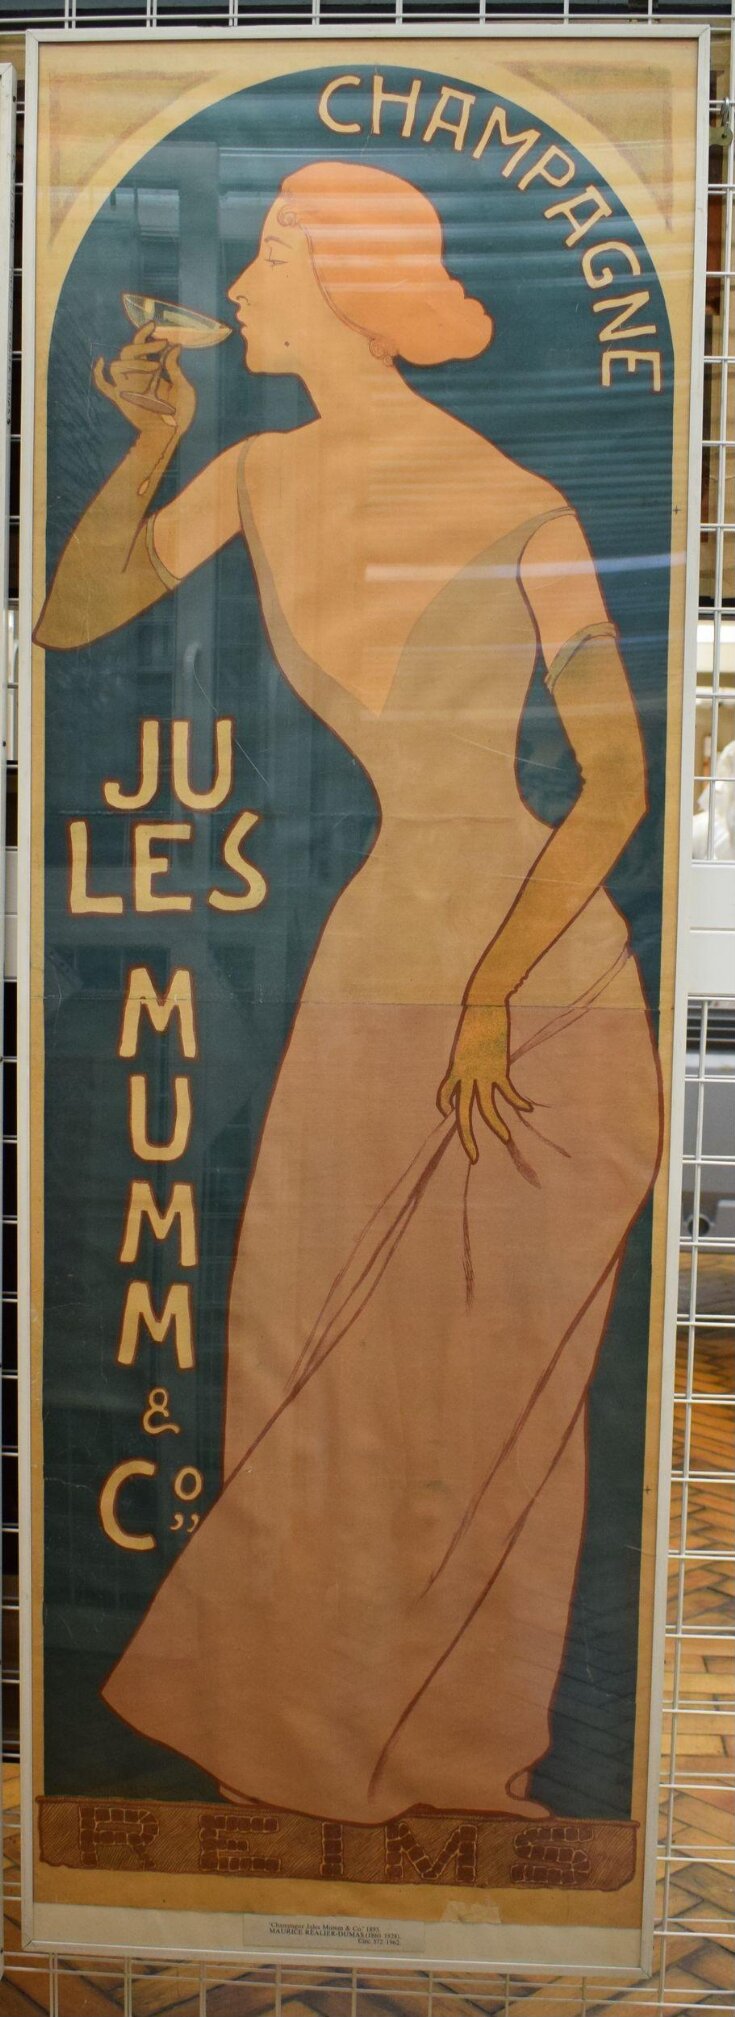 Champagne Jules Mumm et Cie top image